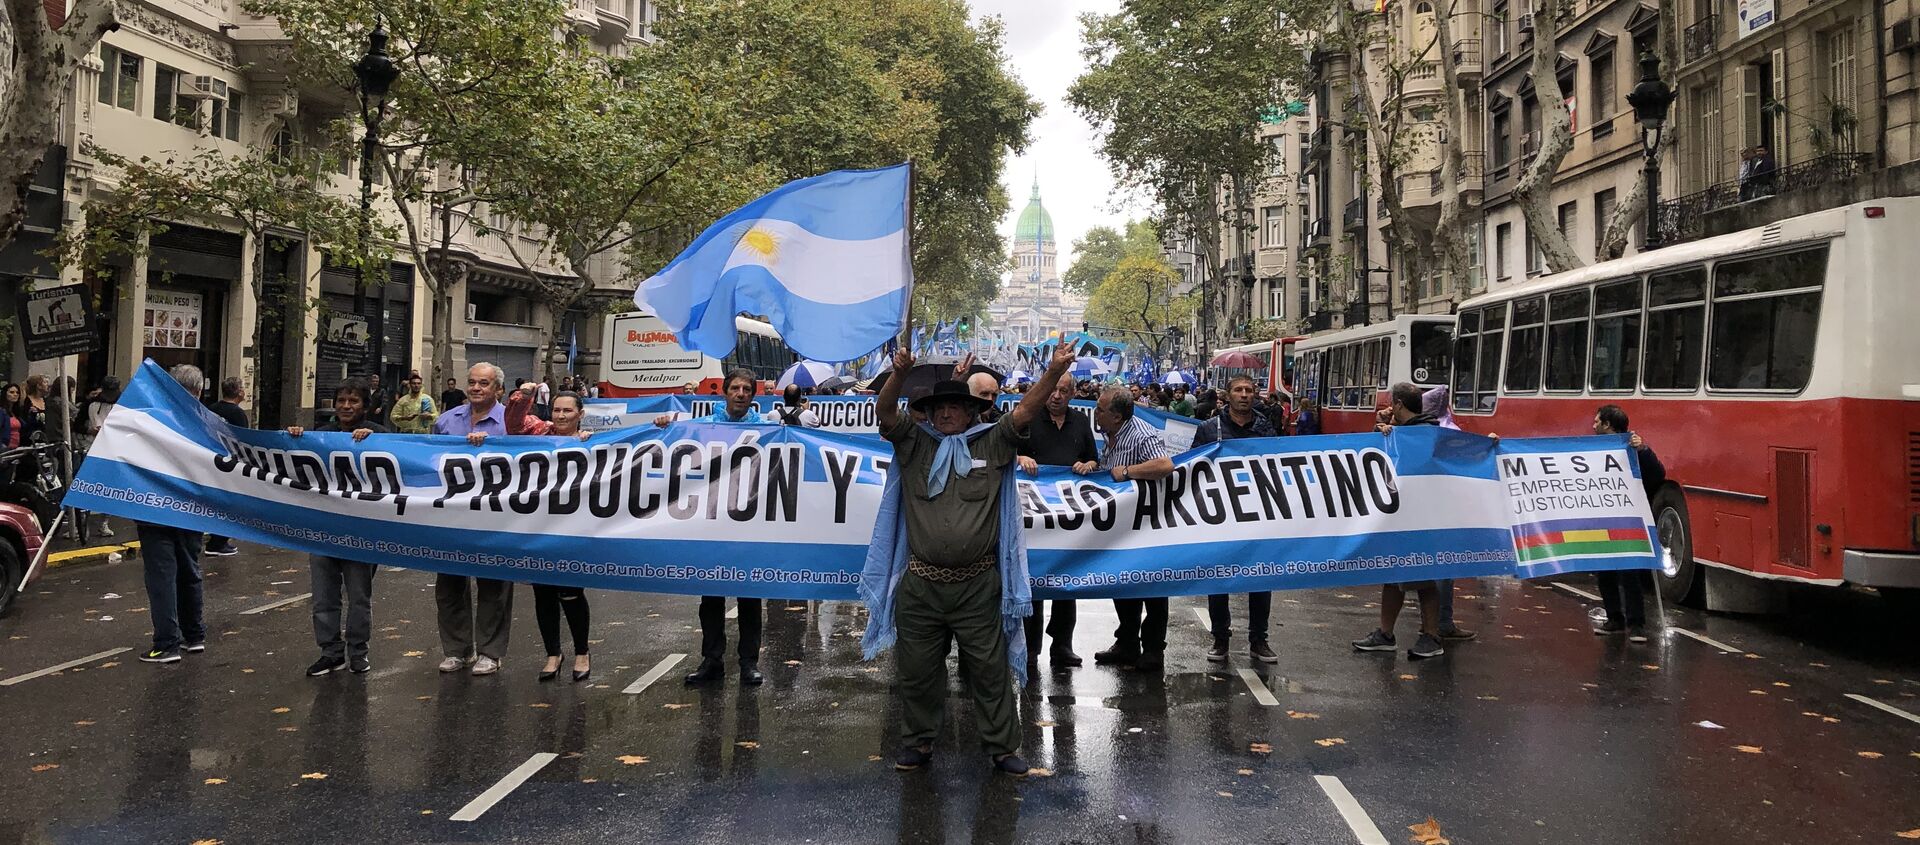 Los argentinos marcharon por la Plaza de Mayo en protesta por la precaria situación económica del país - Sputnik Mundo, 1920, 27.08.2019